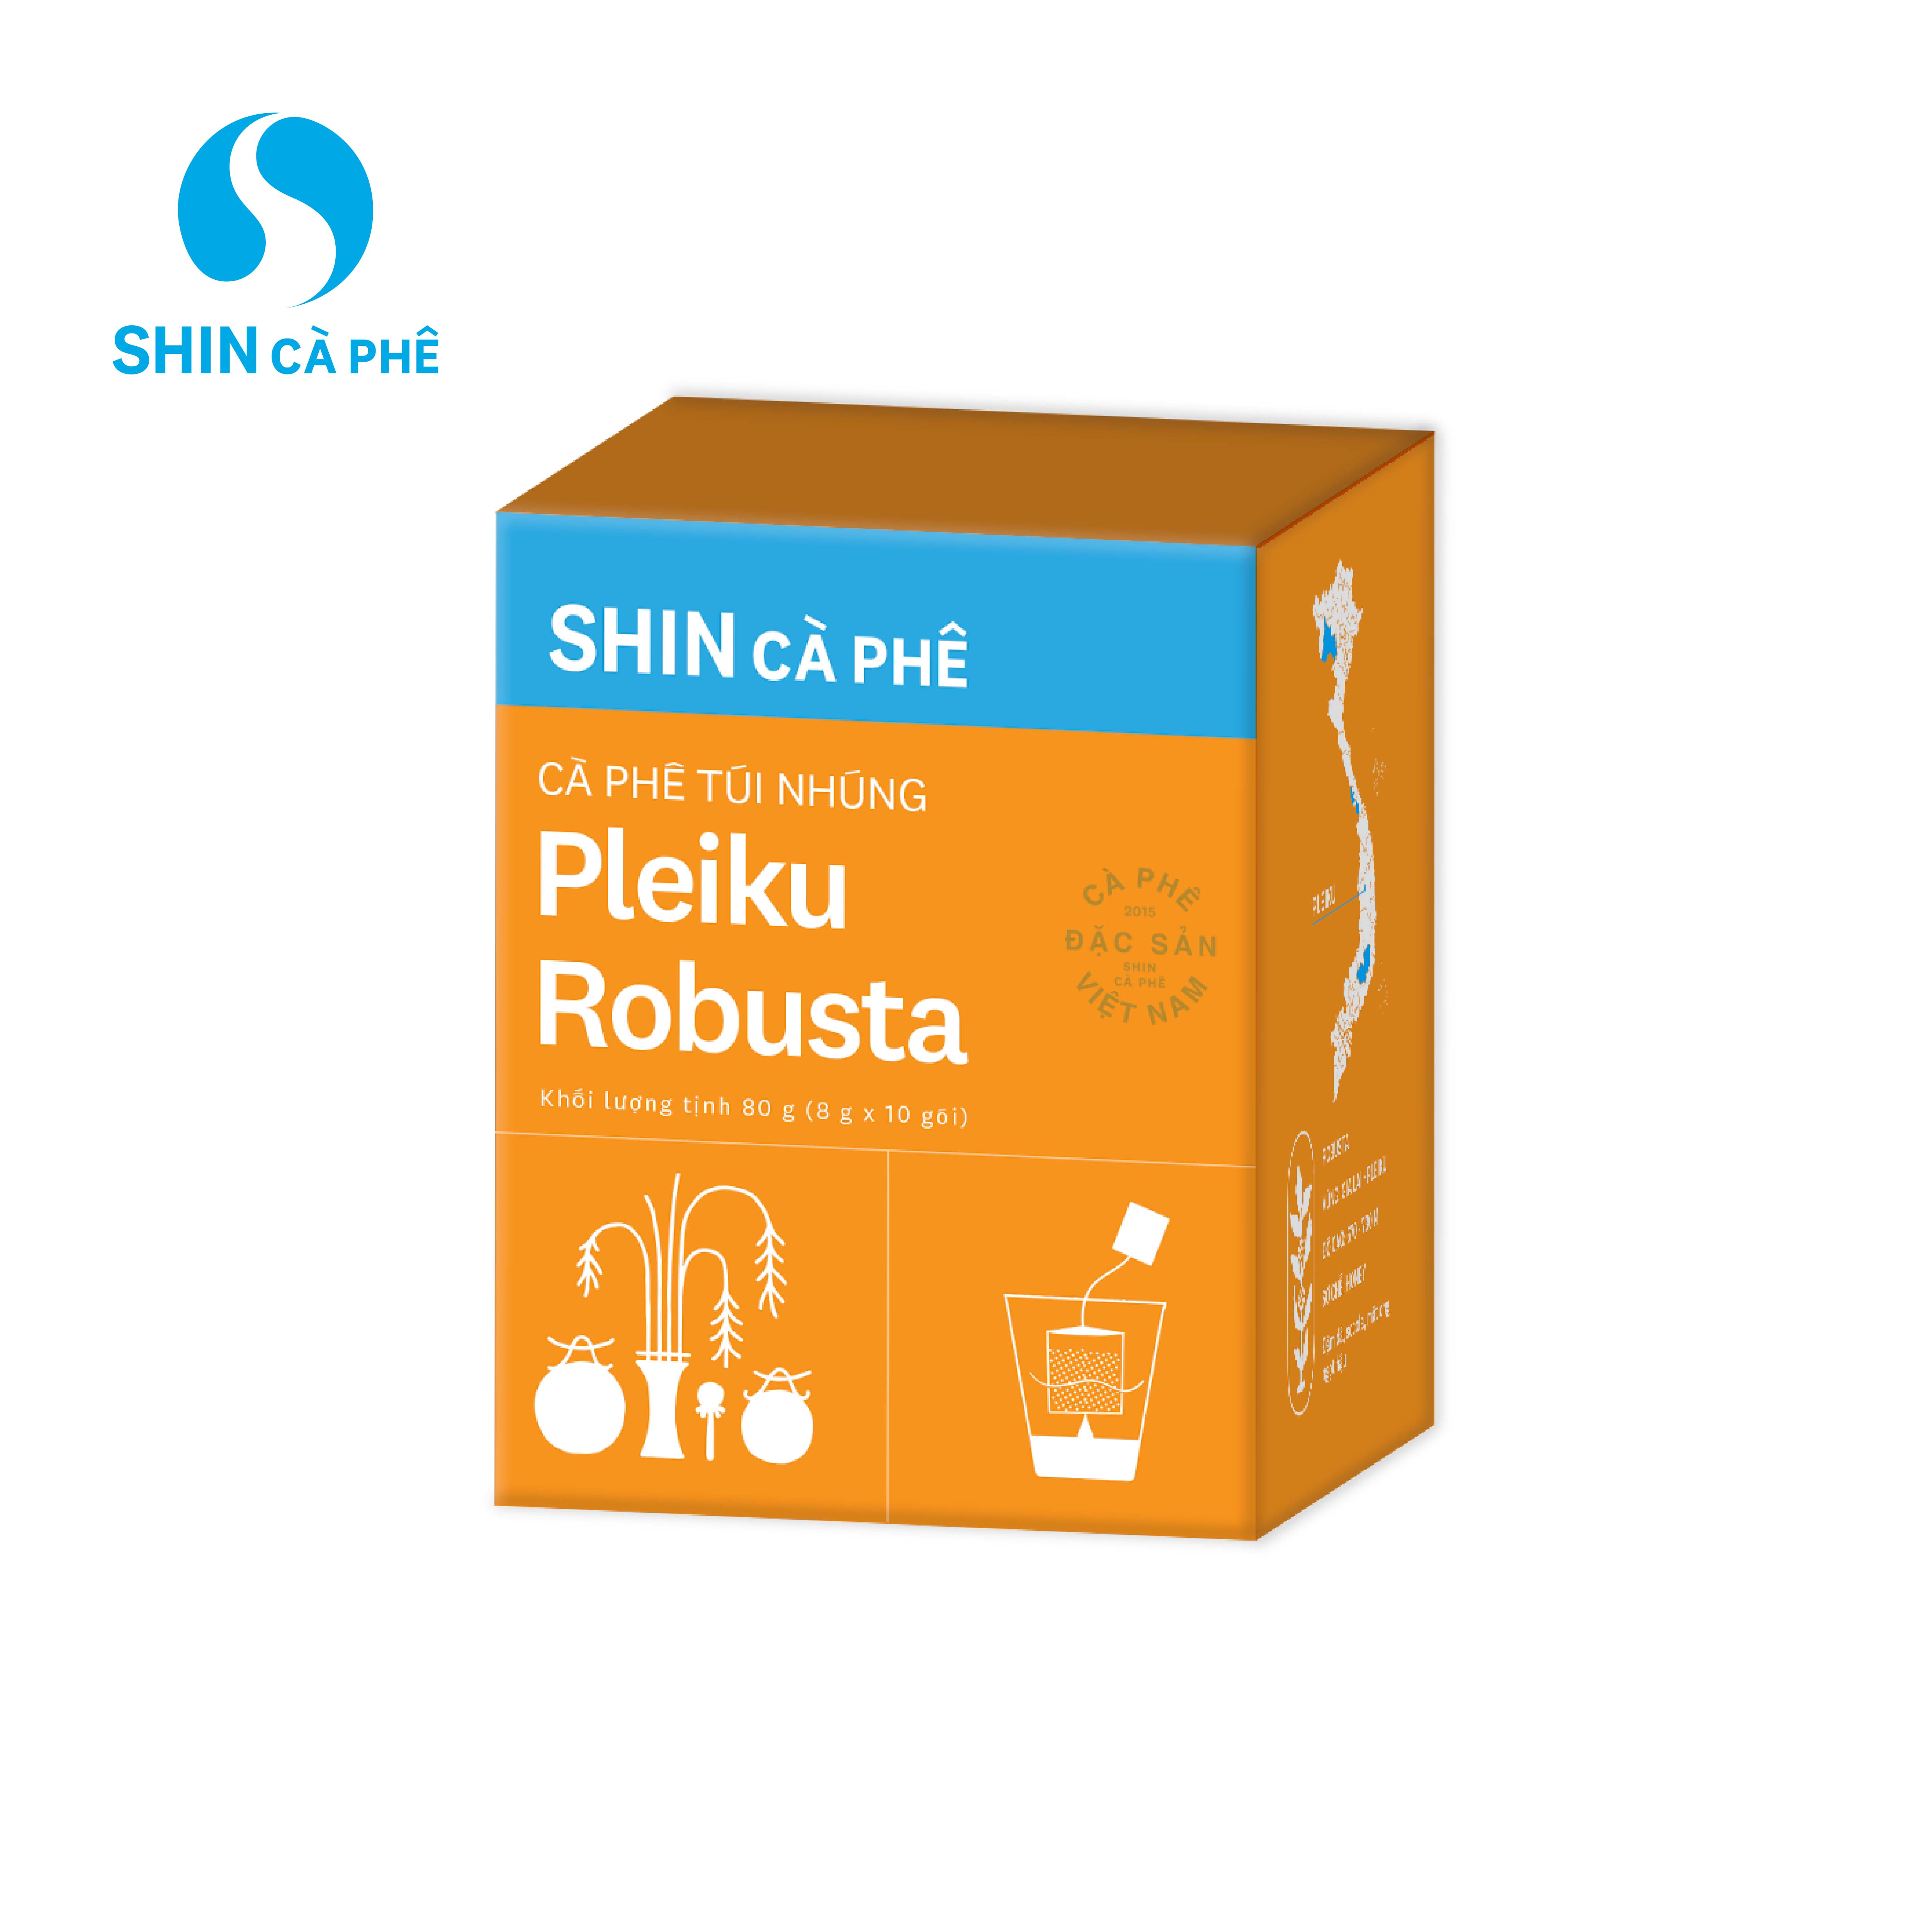 SHIN Cà Phê - Cà phê túi nhúng đặc sản Pleiku Robusta hộp 10 gói